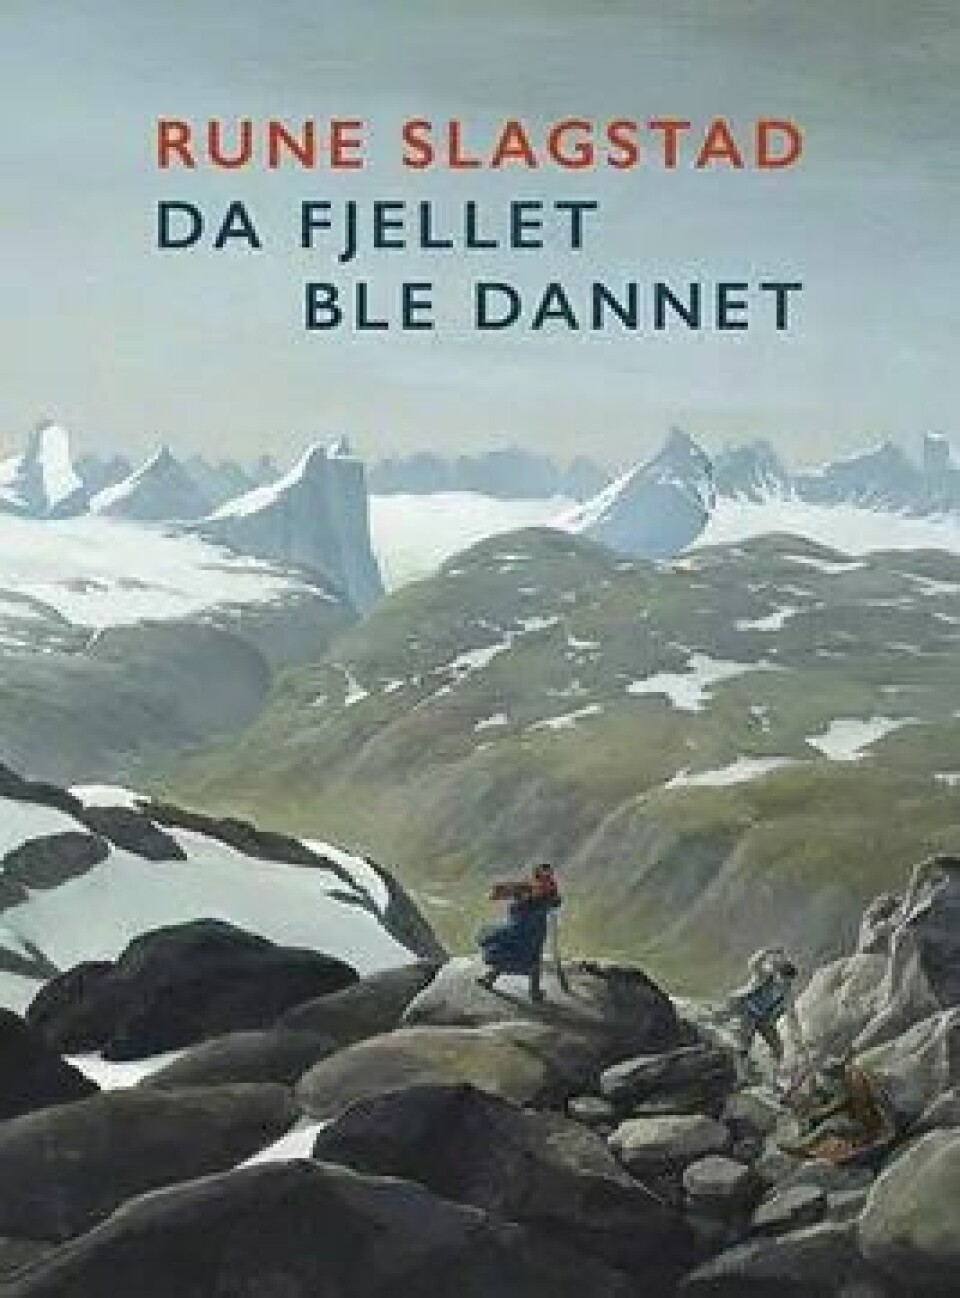 Da fjellet ble dannet av Rune Slagstad (Dreyers Forlag, 2018).